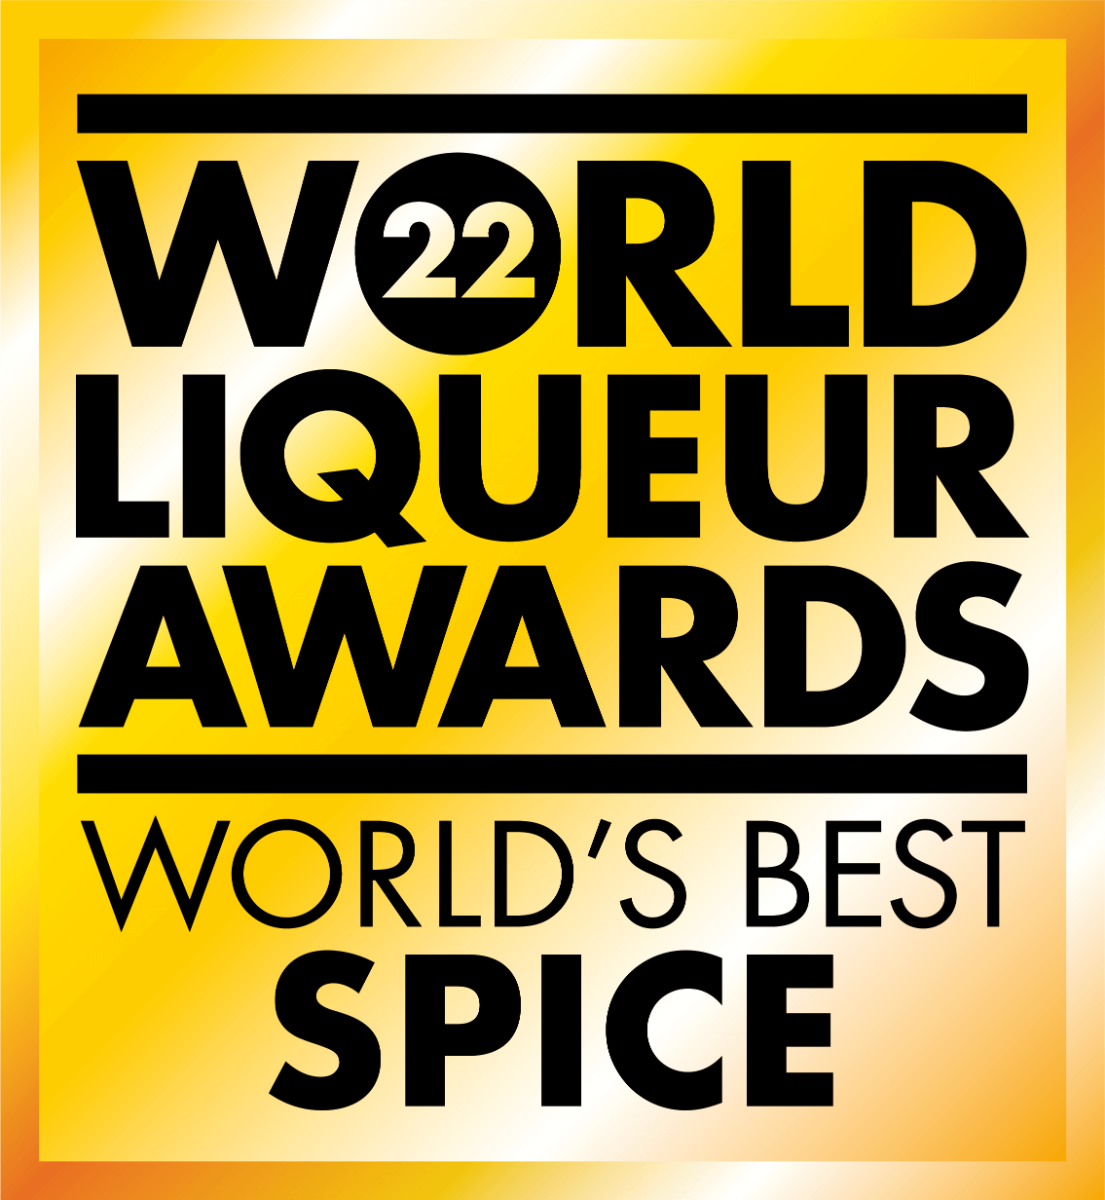 Médaille World Liquor Awards